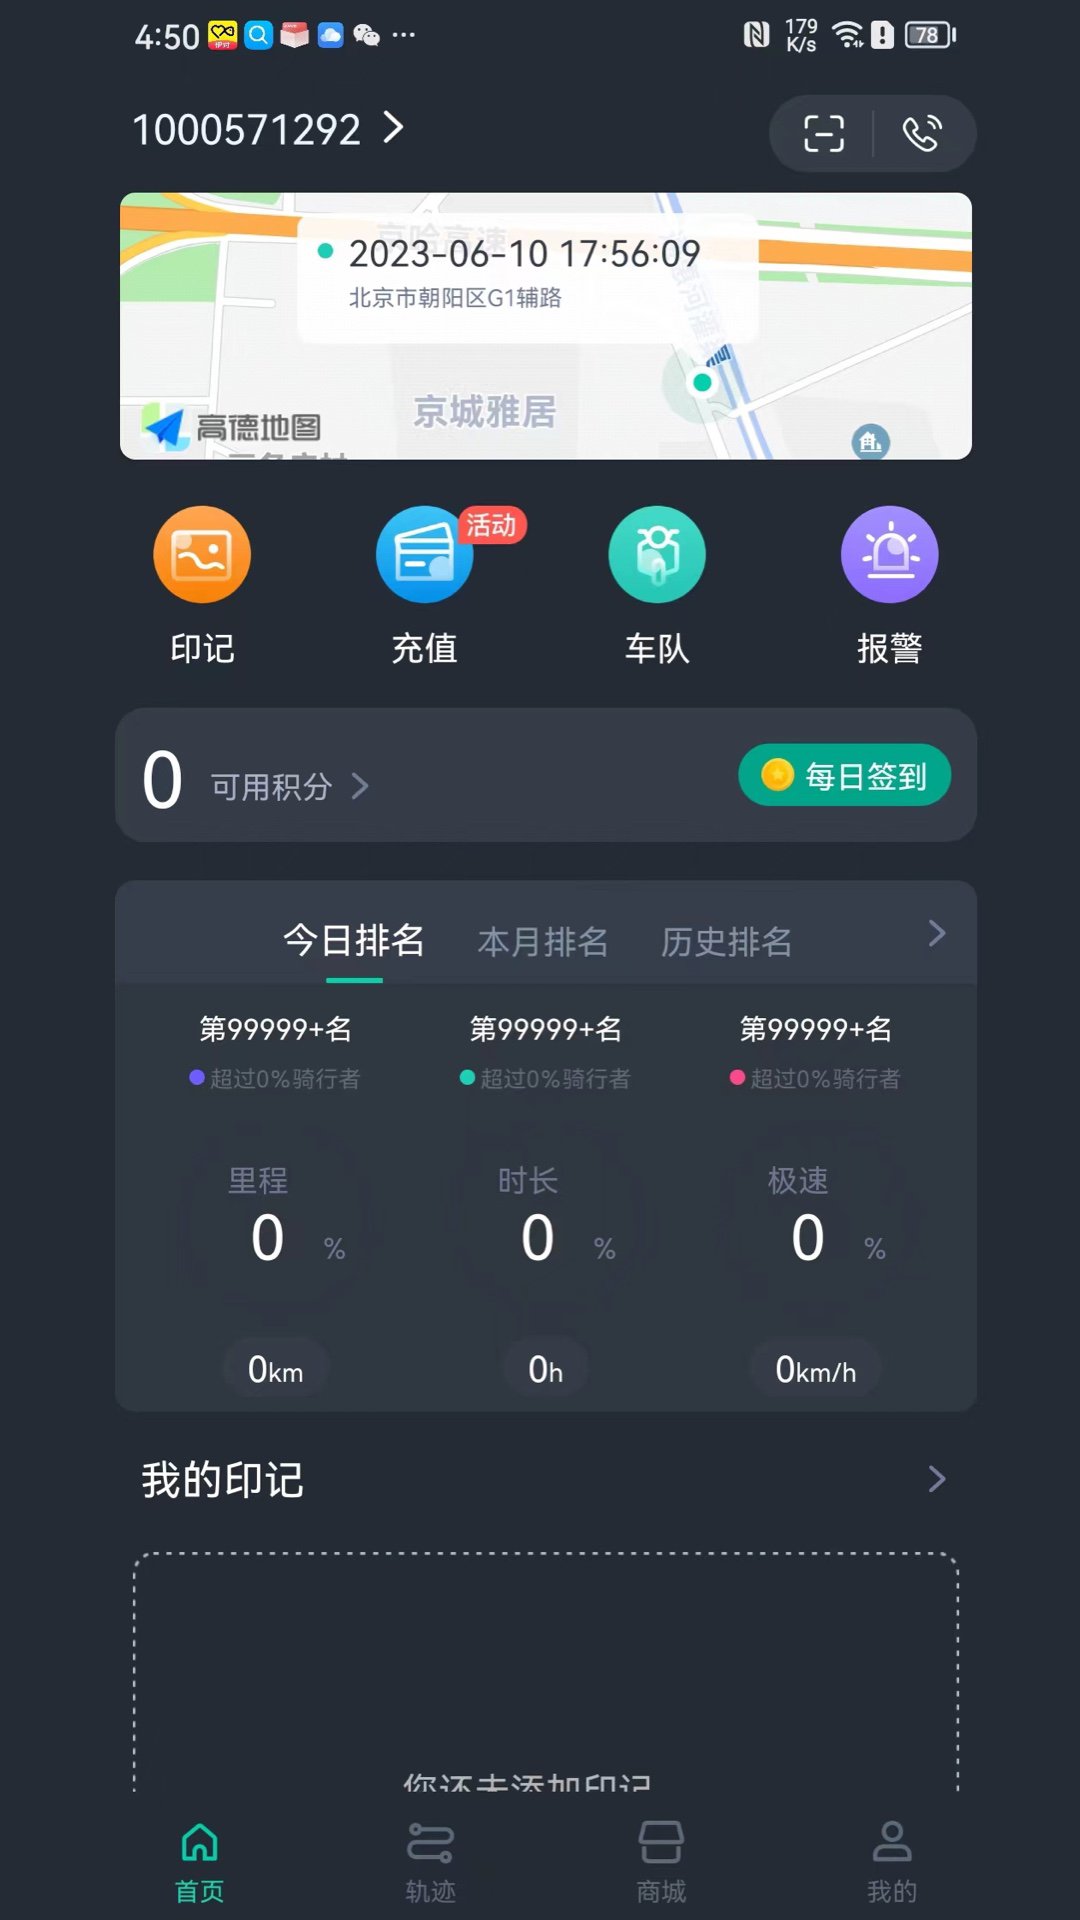 机车游侠app下载,机车游侠app官方最新版 v4.3.1